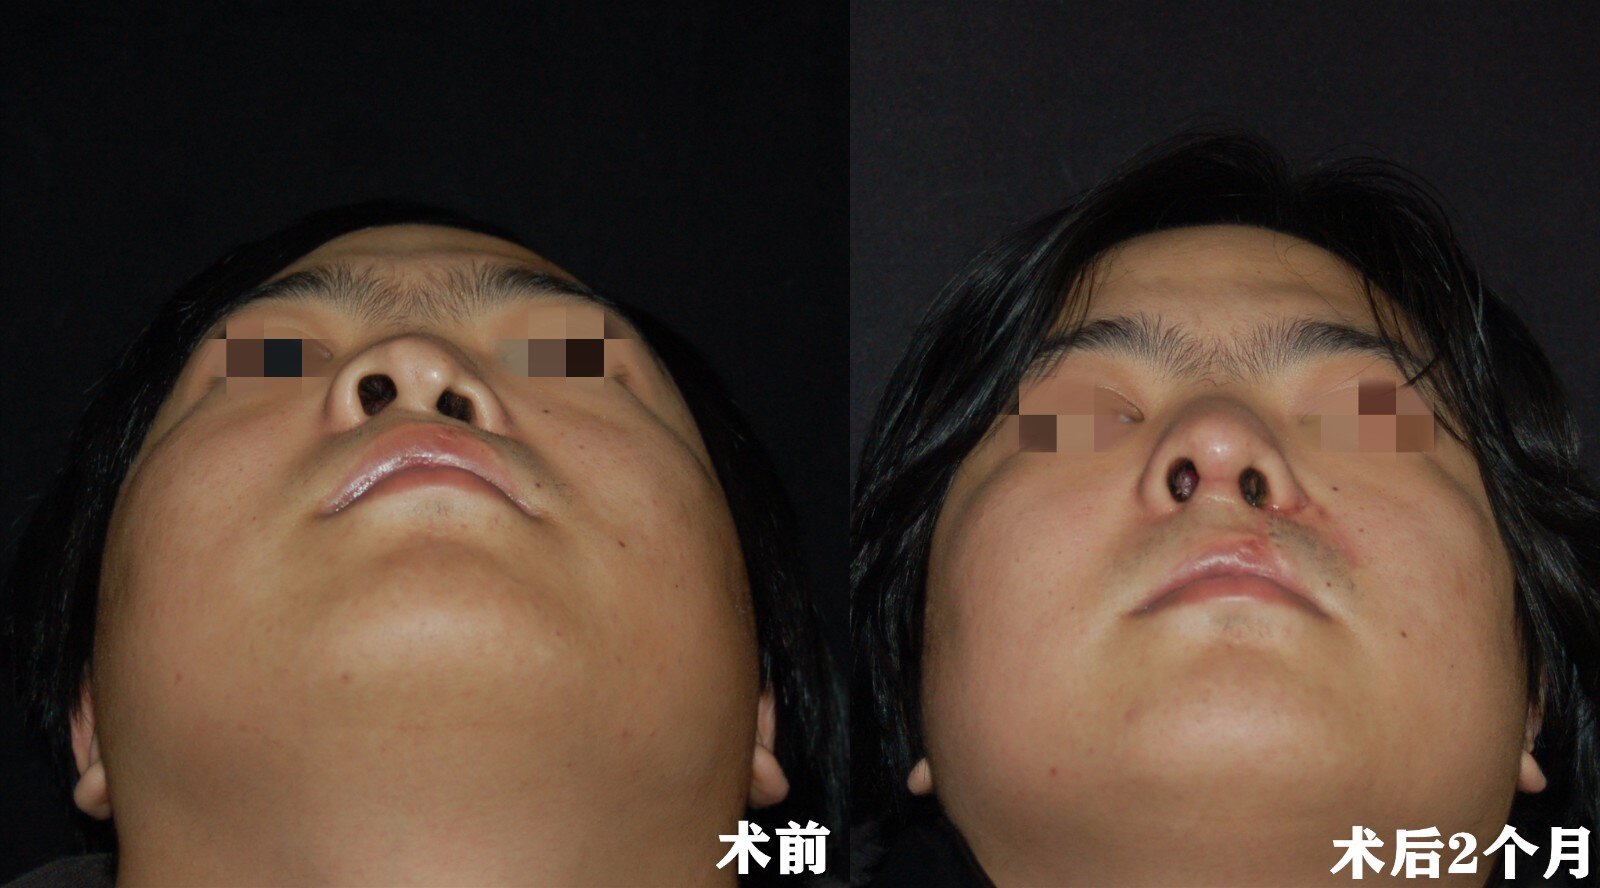 随着人们对美的追求越来越高,有些 唇裂 鼻畸形患者不仅想通过手术